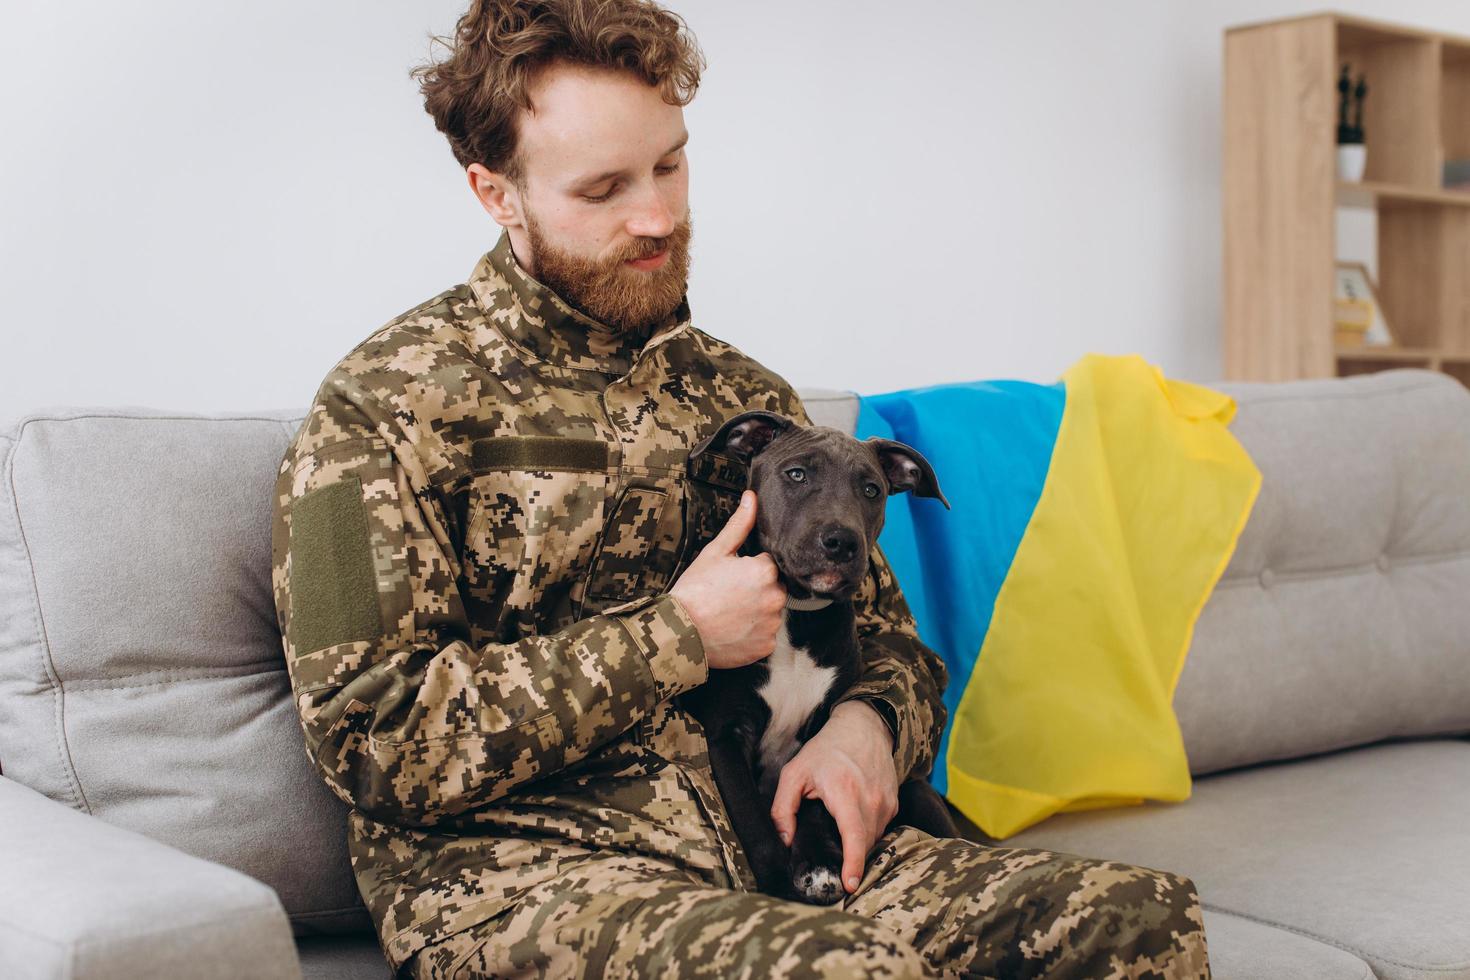 un soldat ukrainien en uniforme militaire est assis sur un canapé avec son fidèle ami, un chien amstaff, sur le fond du drapeau jaune et bleu. photo